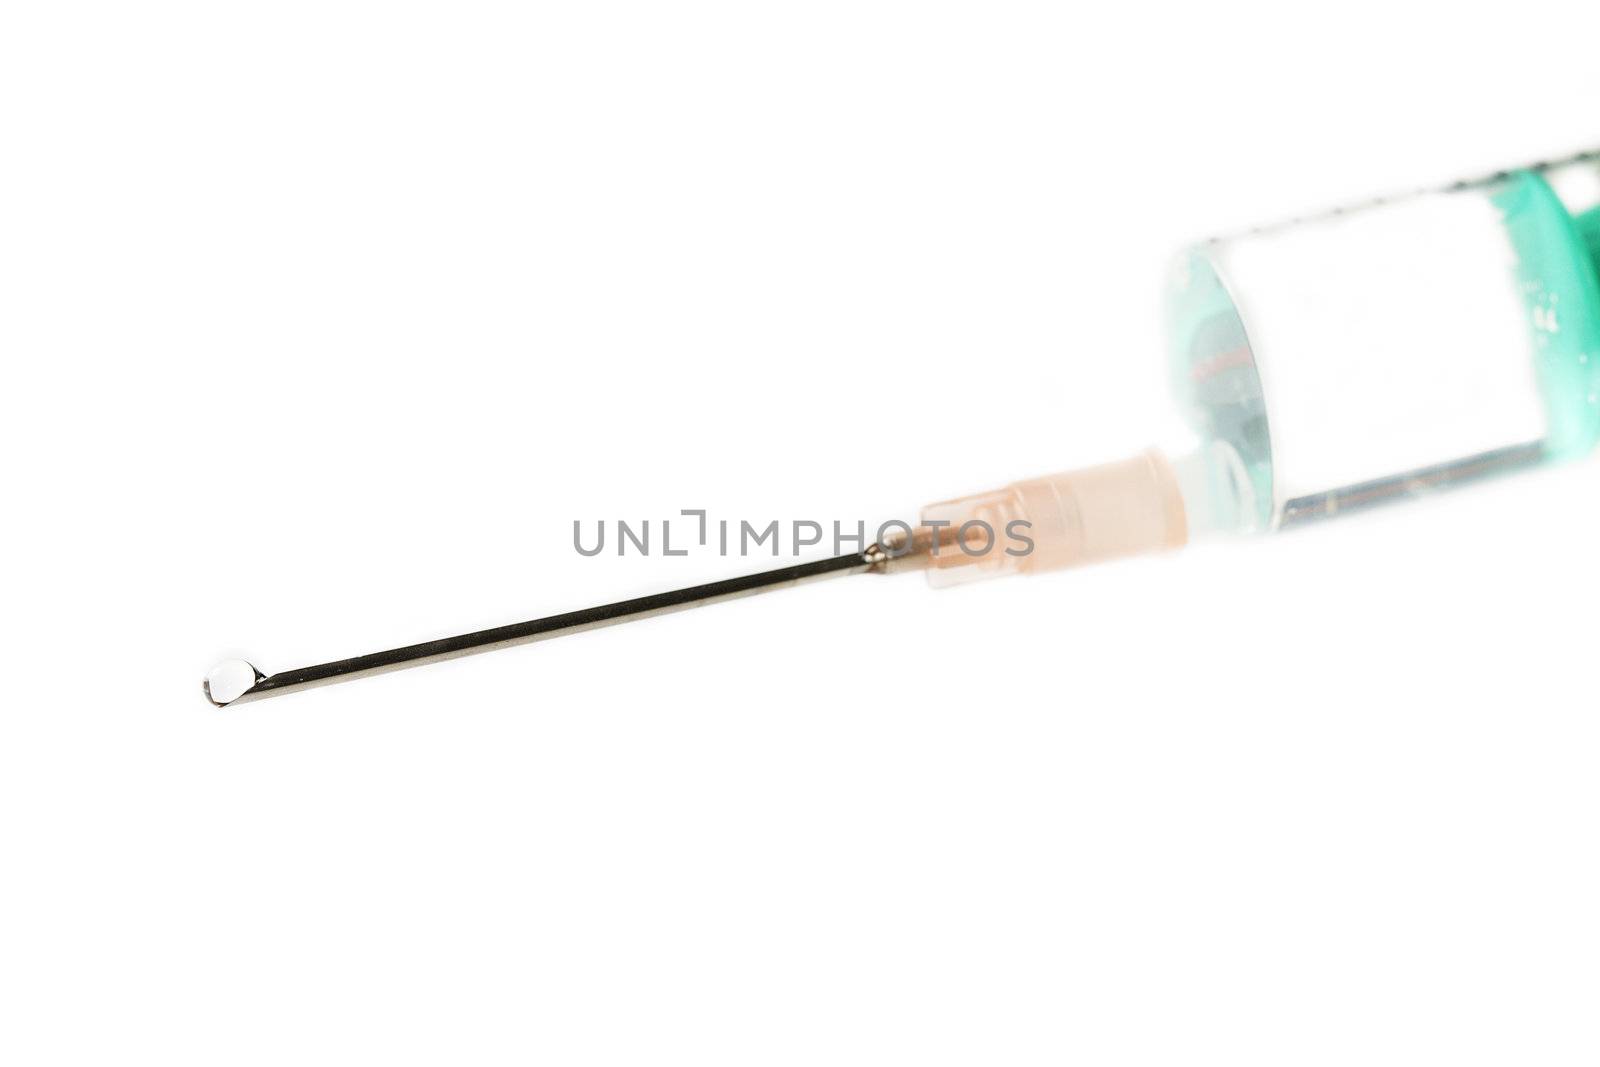 blured syringe on white by RobStark